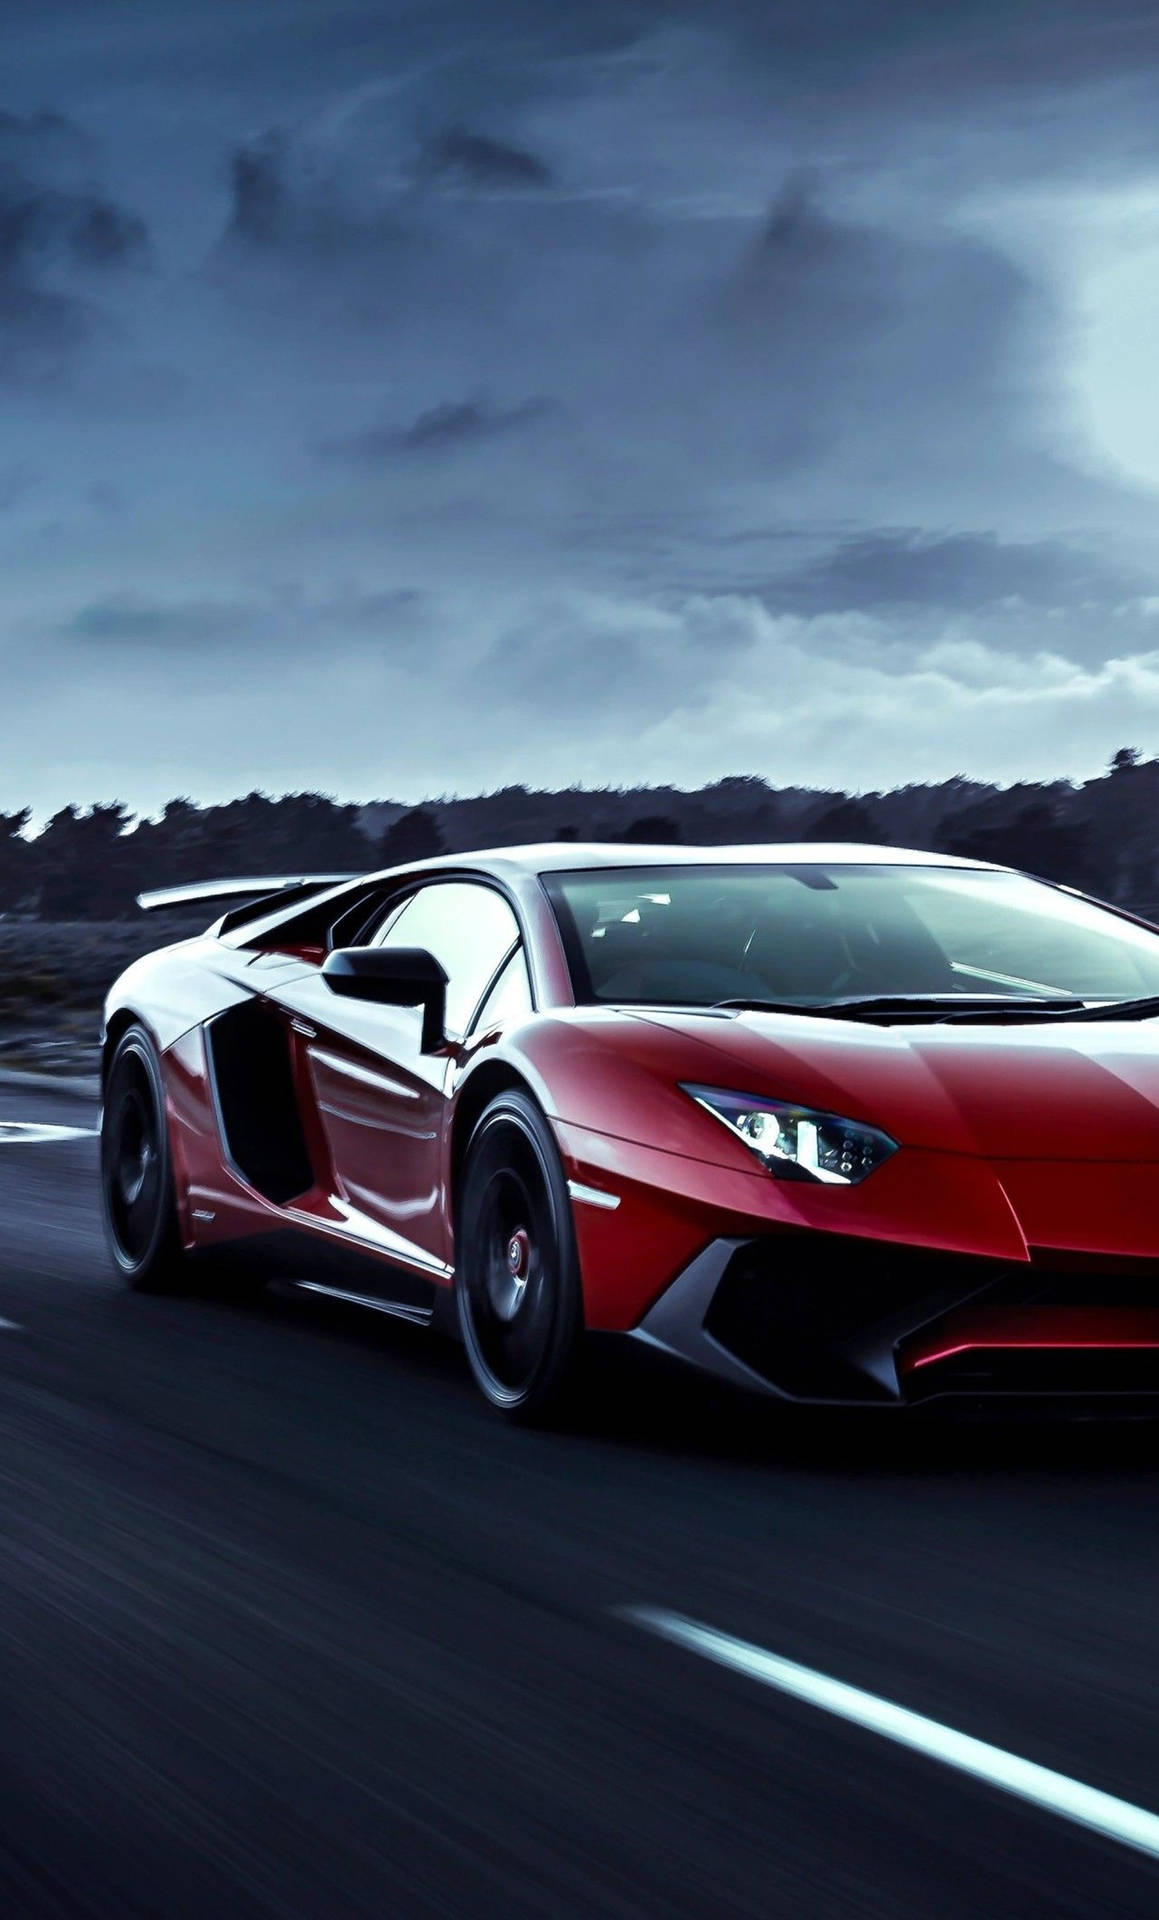 Verwöhnensie Sich Mit Diesem 4k Lamborghini Iphone Und Erleben Sie Einen Luxuriösen Lebensstil. Wallpaper